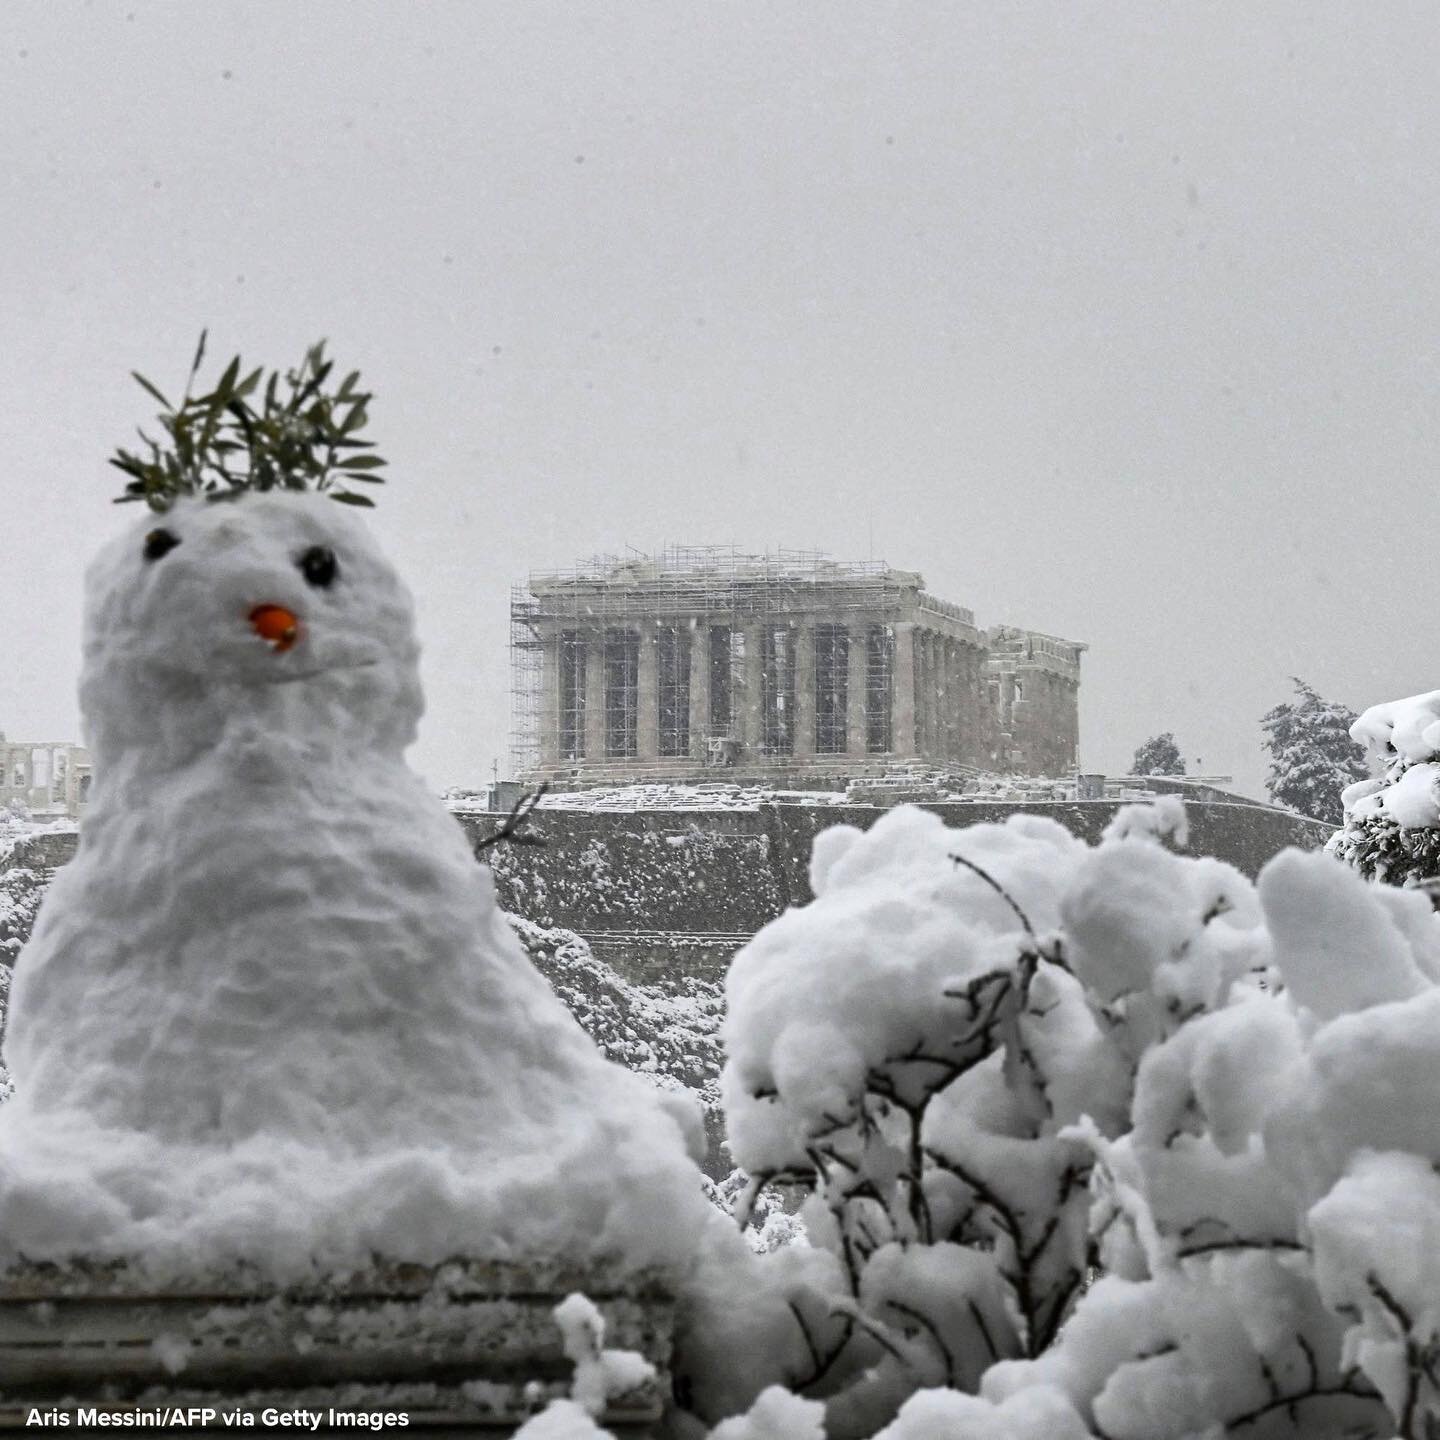 即使是帕特农神庙?! 大家注意保暖和安全. 🥶🥶#parthenon #acropolistech #snowpocalypse #coldweather